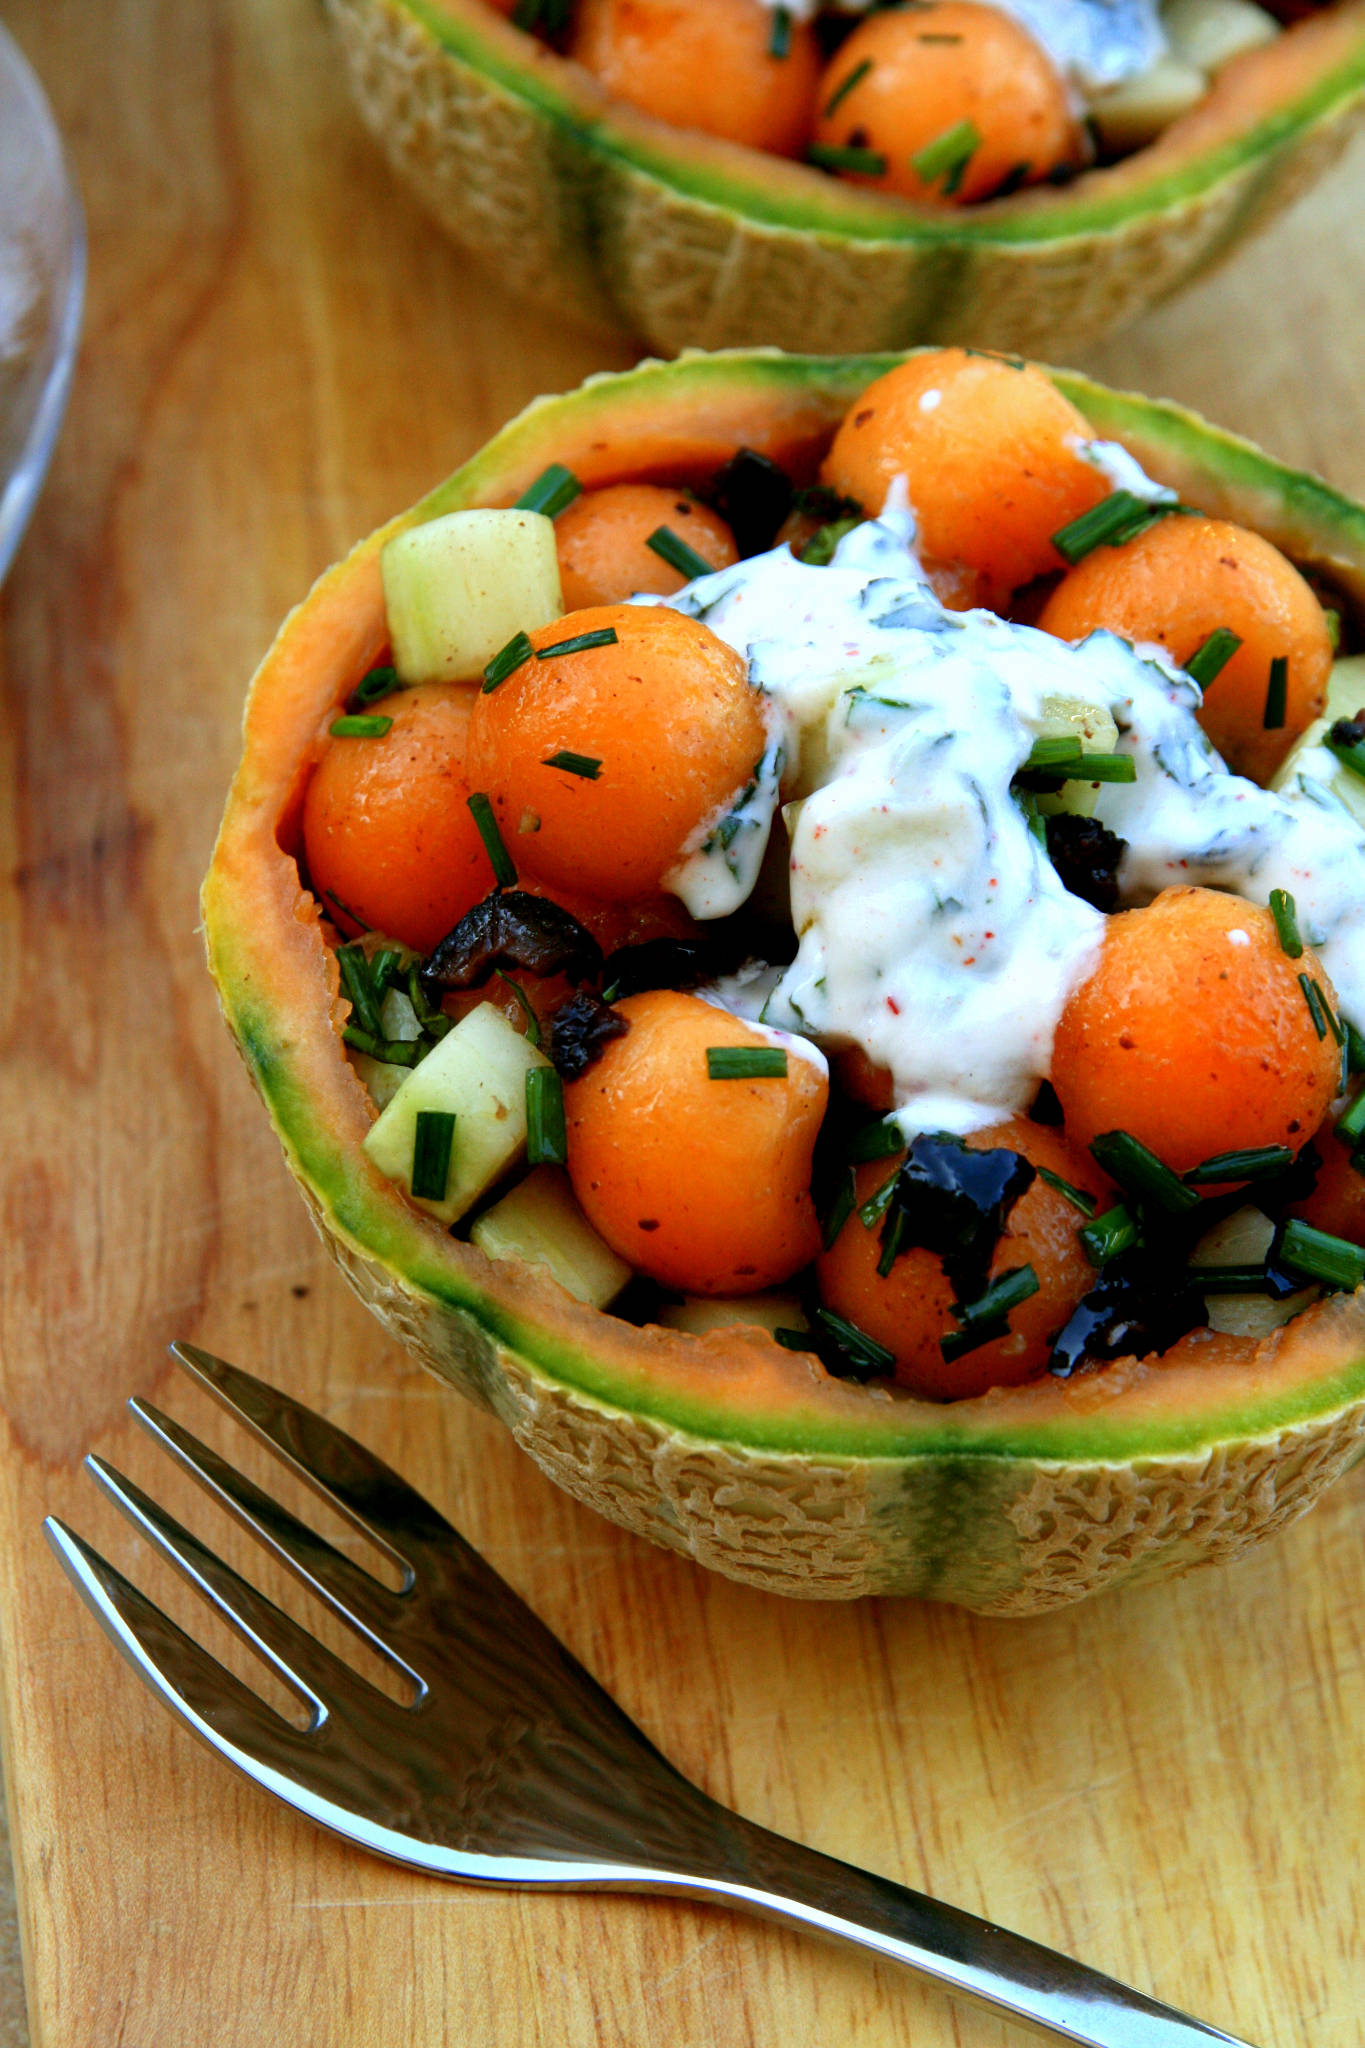 Salade melon, concombre & olives noires, sauce yaourt à la menthe